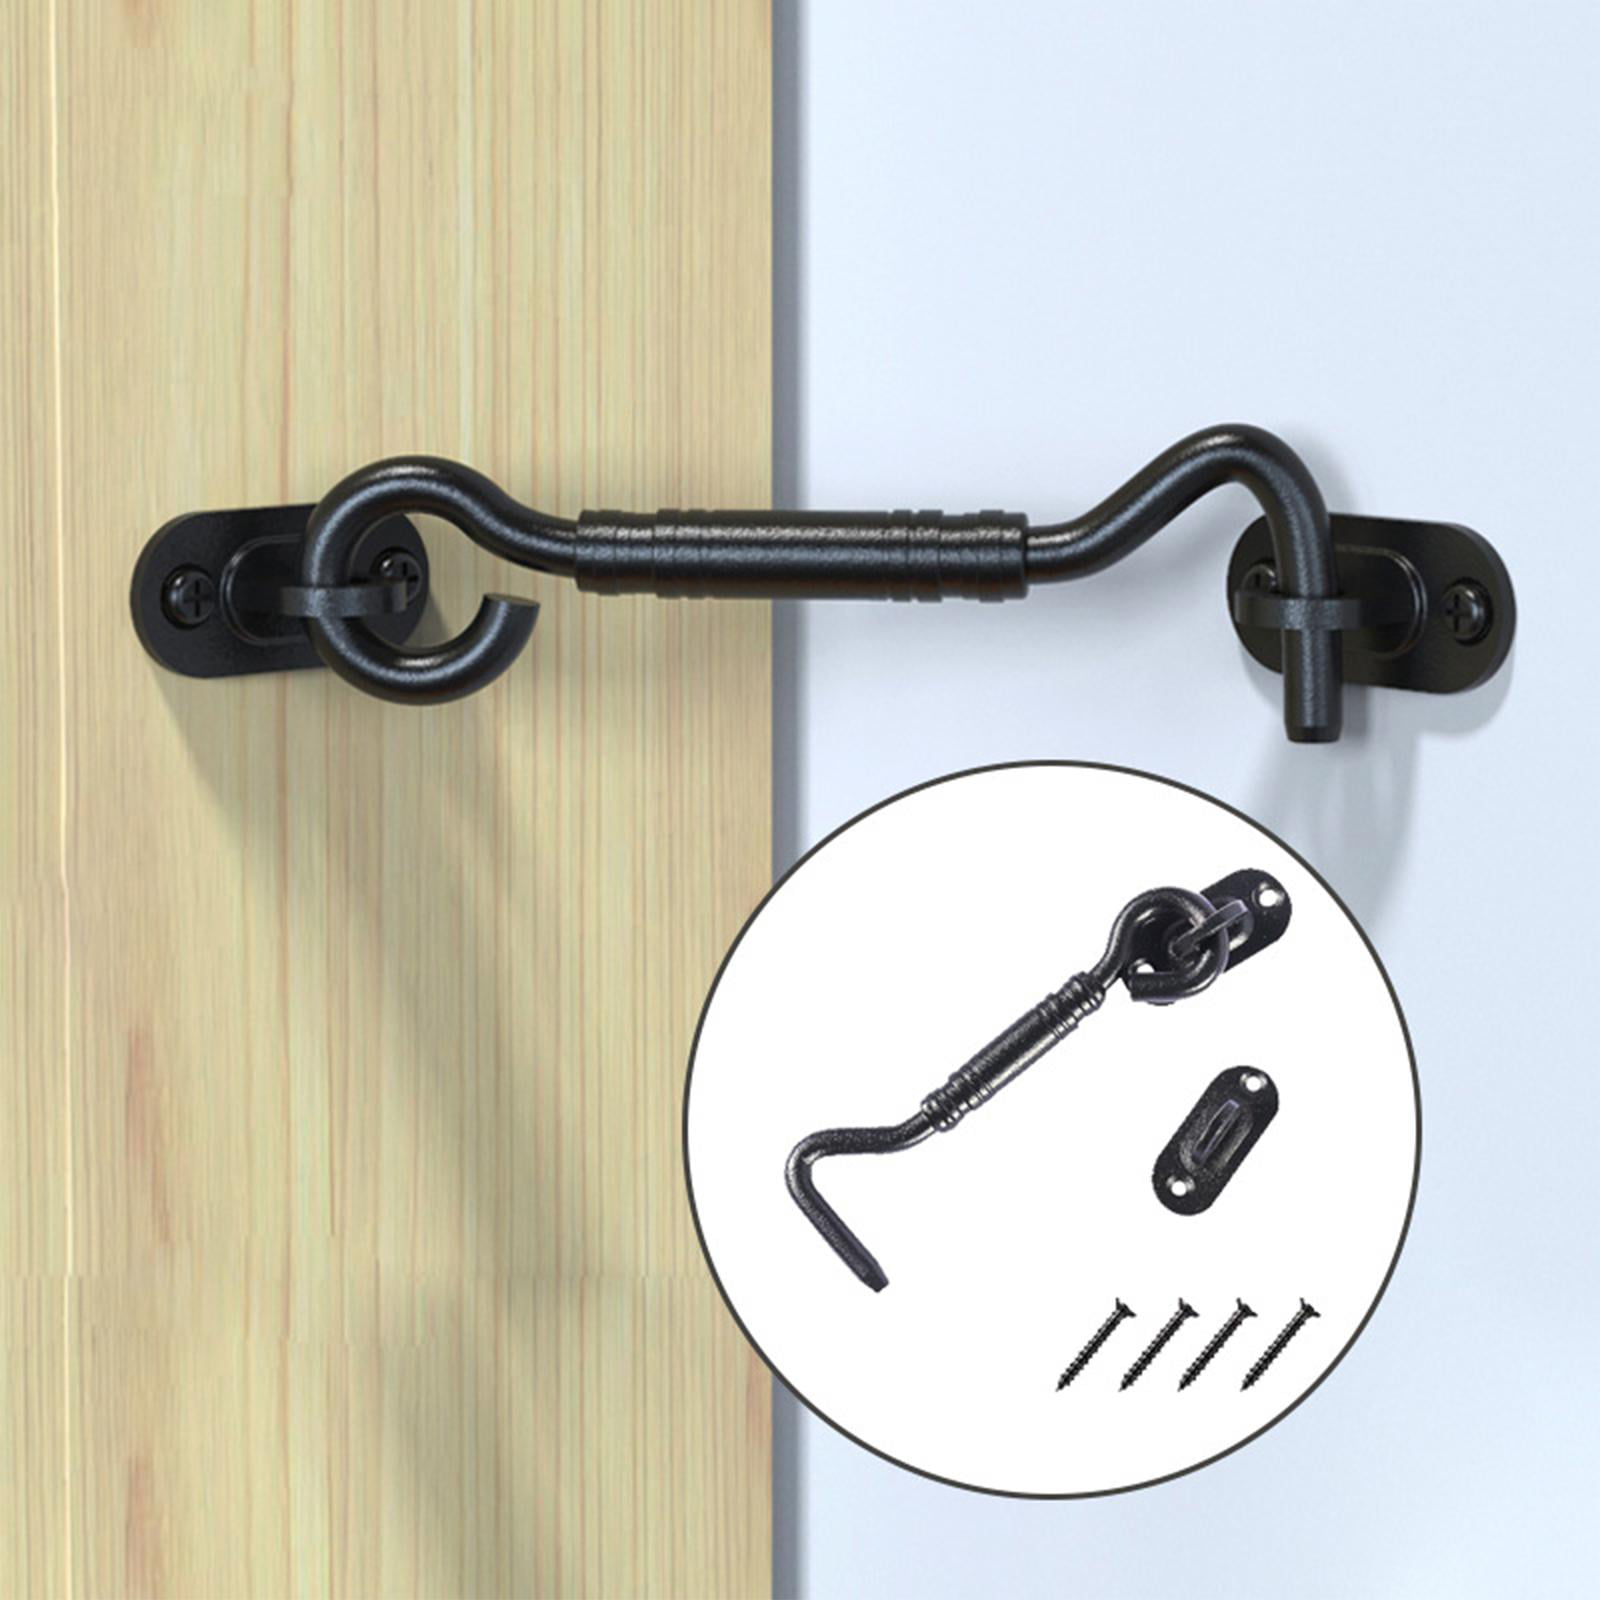 4'' Hook and Eye Latch Stainless Steel Heavy Duty Barn Door Lock with  Screws for Bedroom Gate Bathroom Garage , Black 